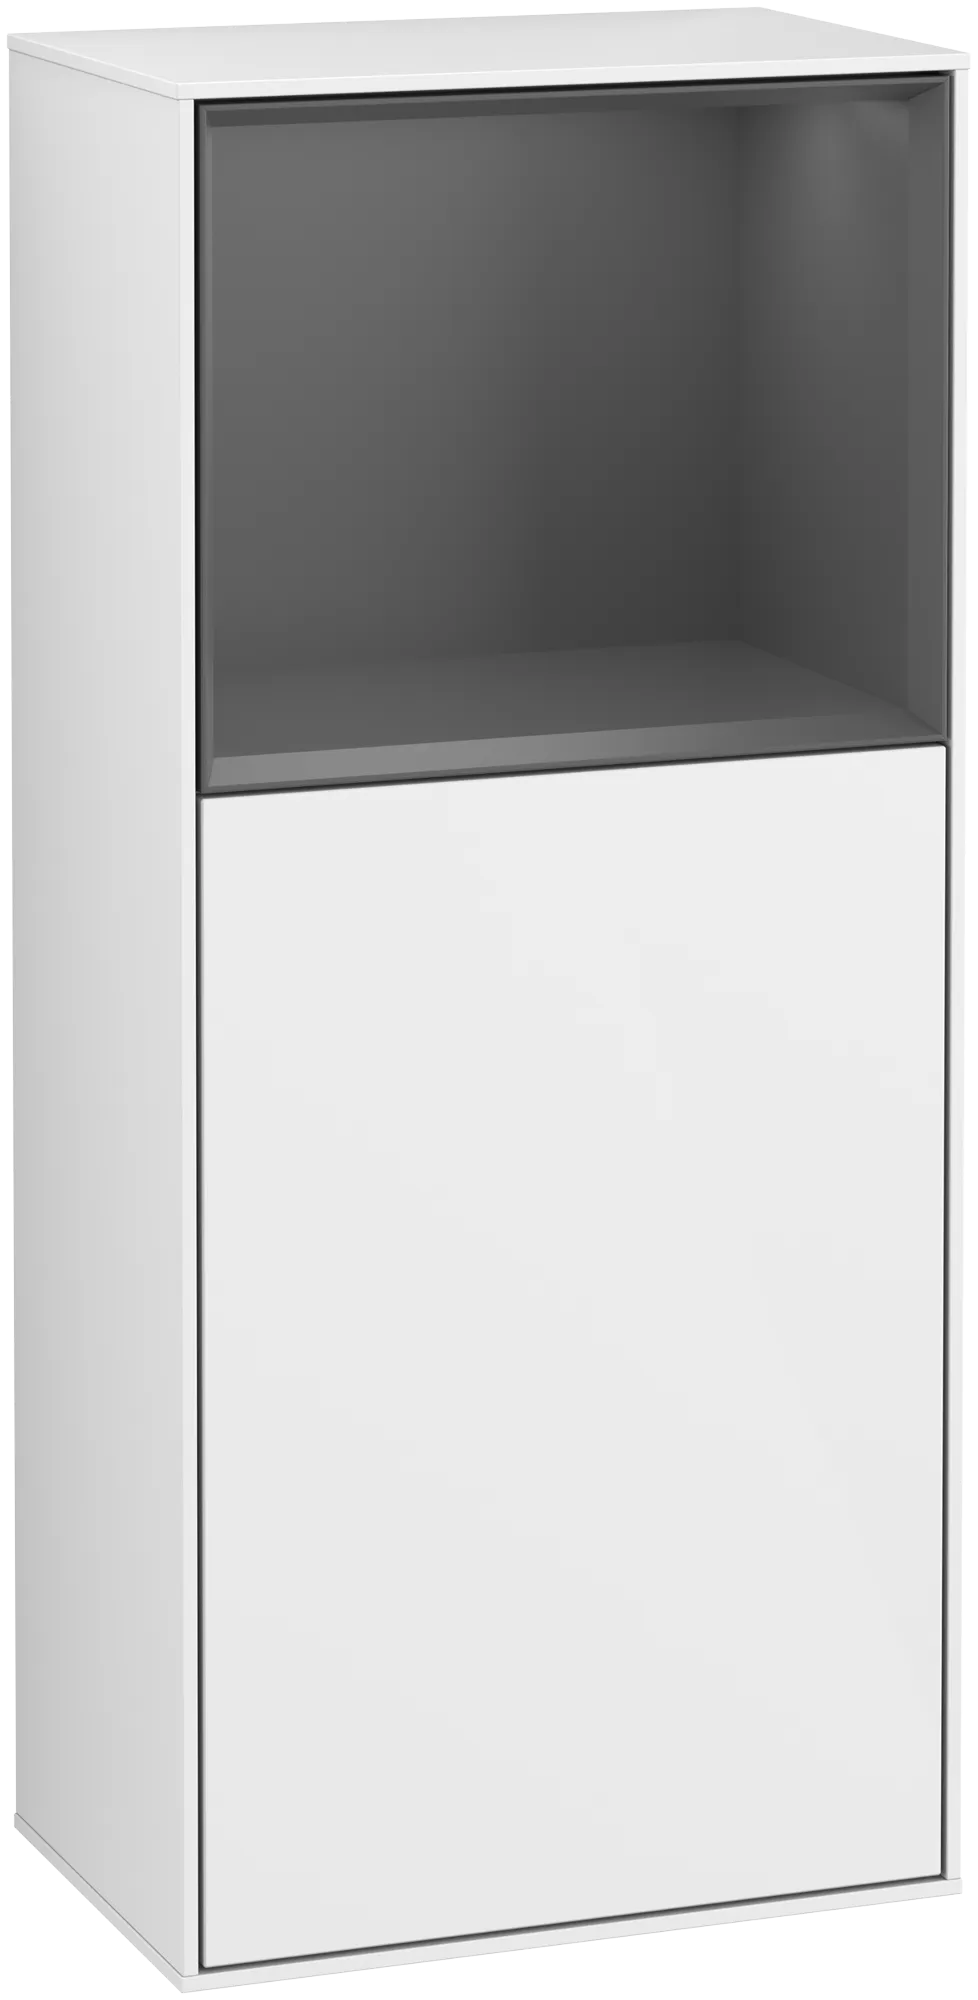 Bild von VILLEROY BOCH Finion Seitenschrank, mit Beleuchtung, 1 Tür, 418 x 936 x 270 mm, Glossy White Lacquer / Anthracite Matt Lacquer #G500GKGF